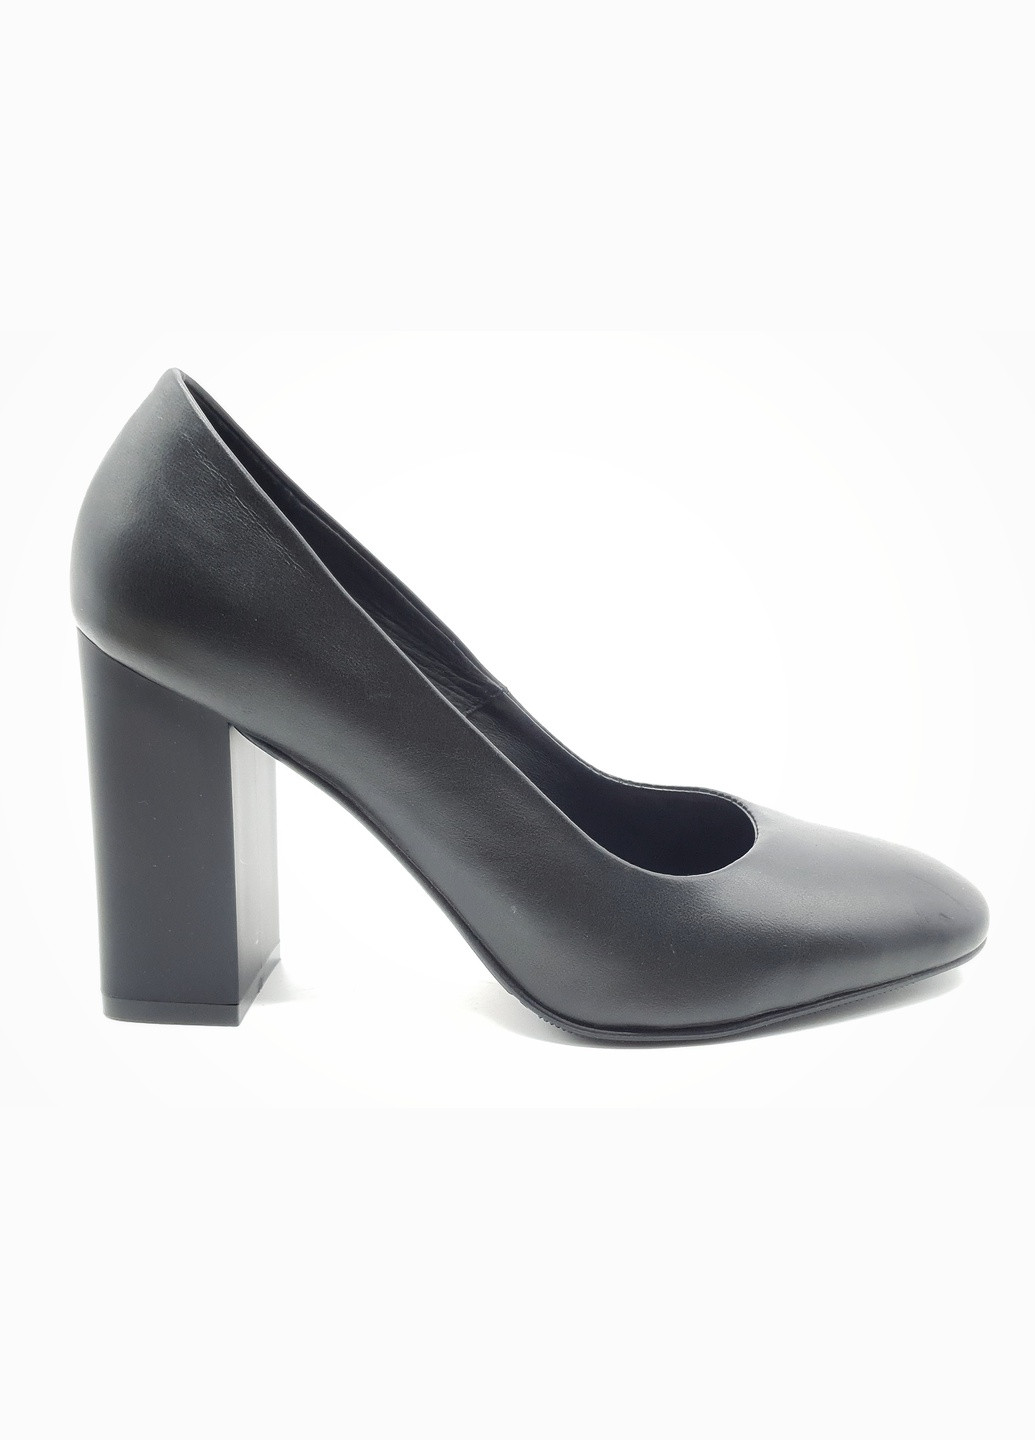 Жіночі туфлі чорні шкіряні N-18-15 23 см (р) Nivelle